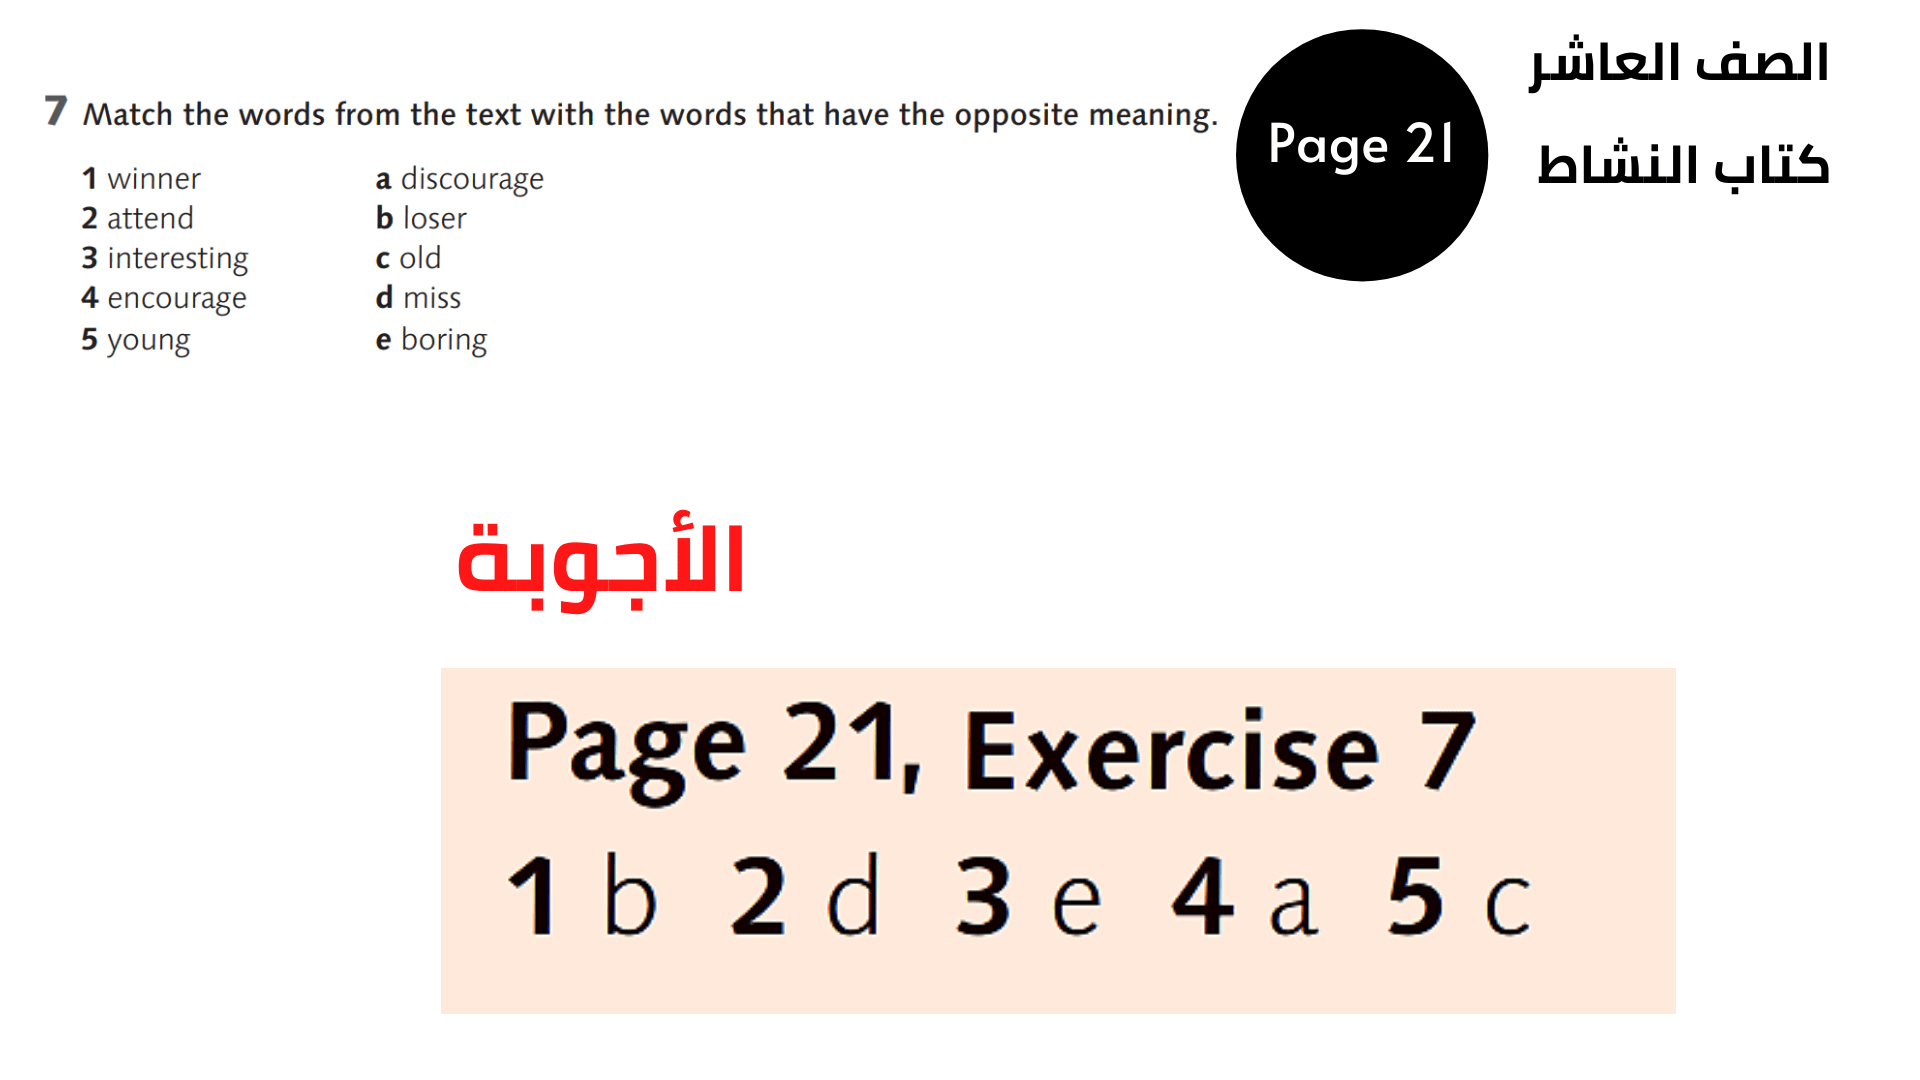 الصفحة 21 ، التمرين 7